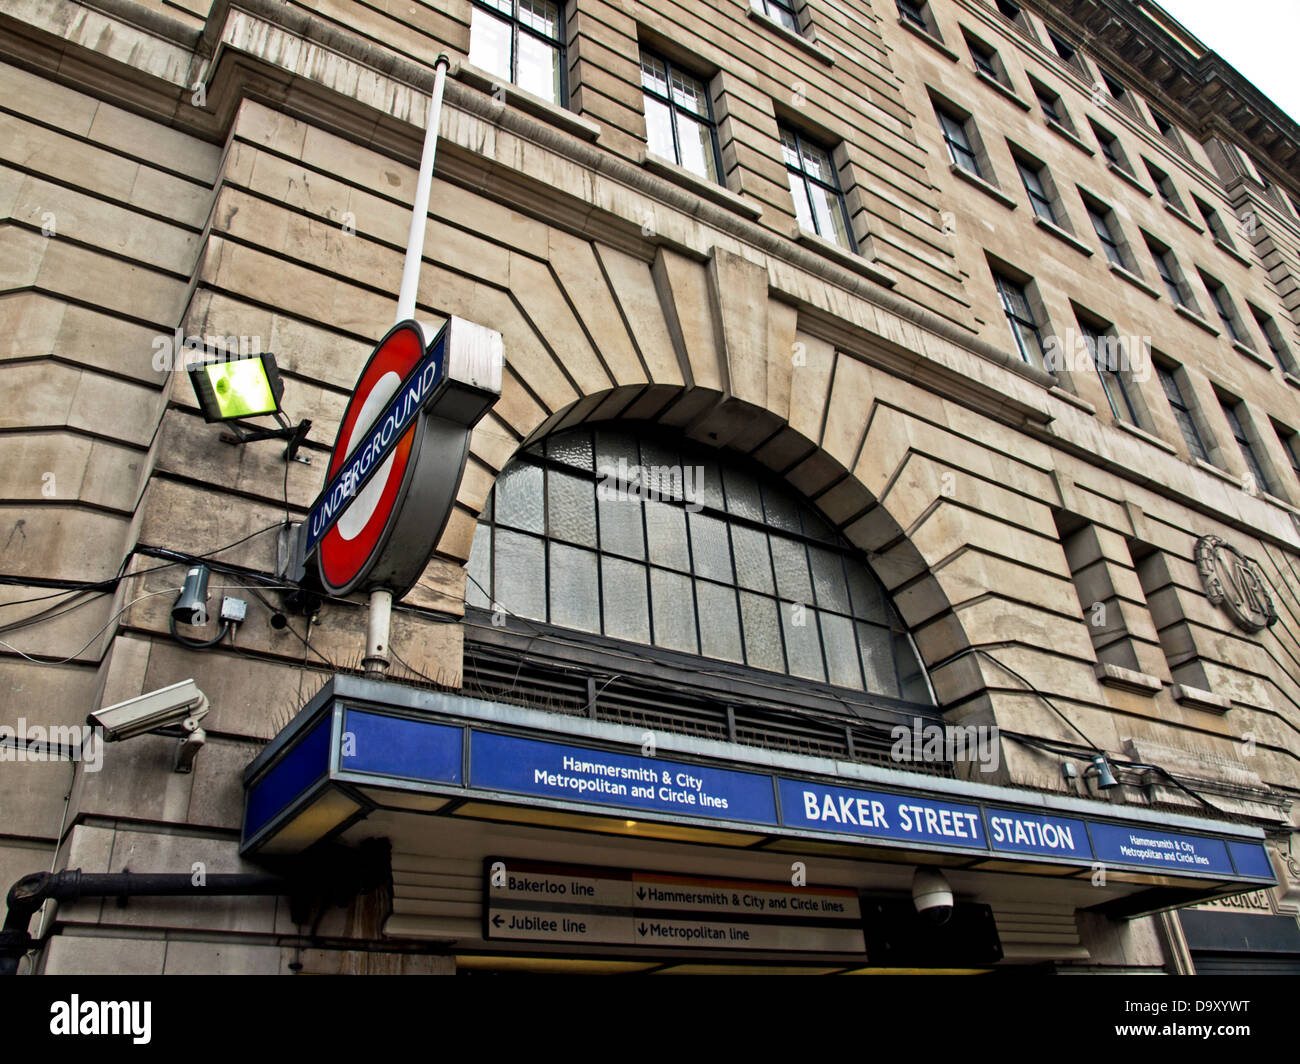 Baker Street Underground Station entrance on Marylebone Road, London, England, United Kingdom Stock Photo